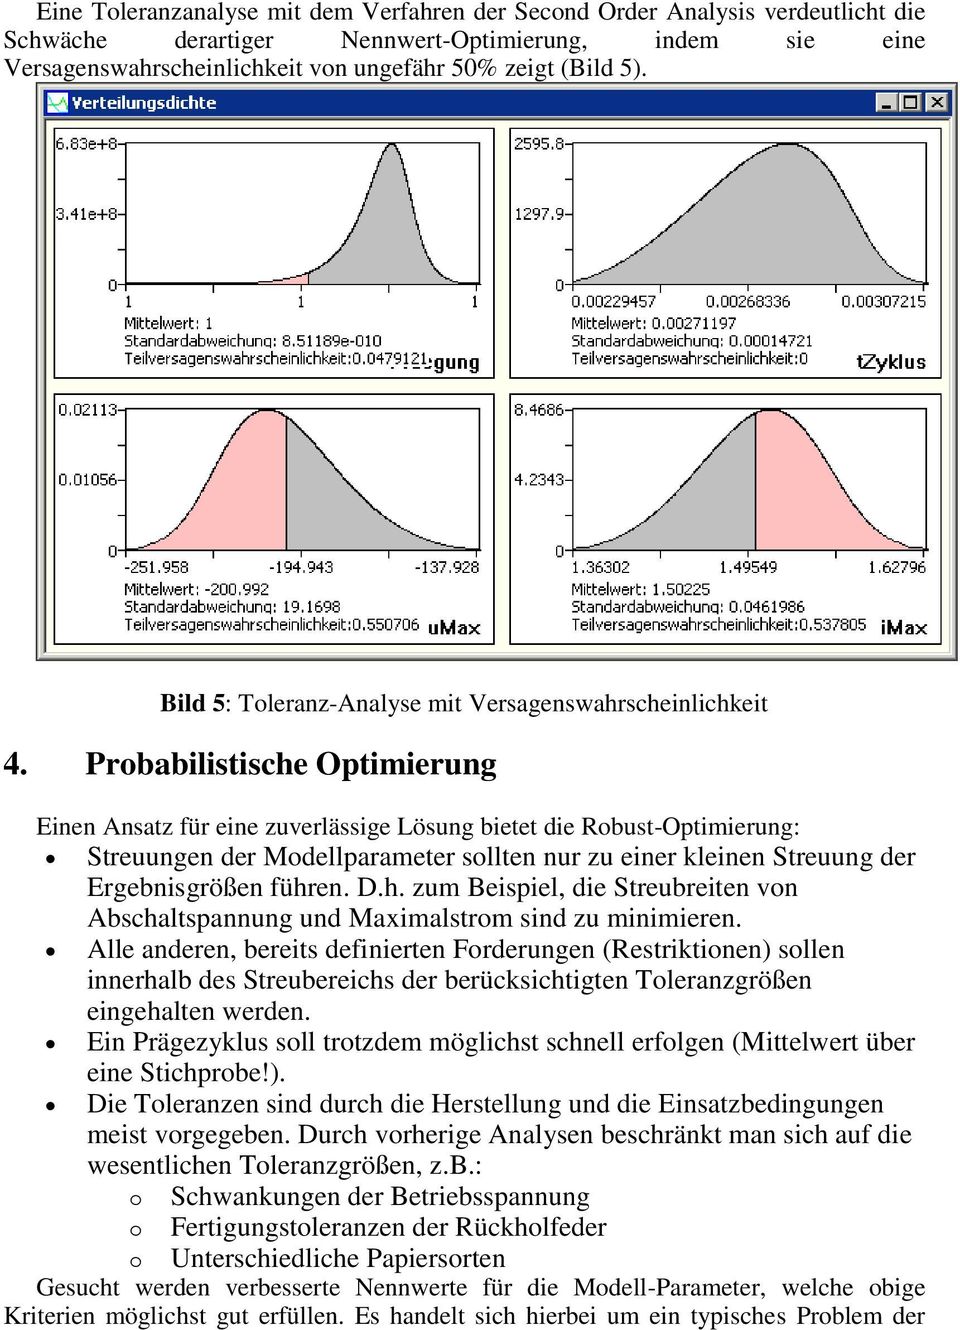 Probabilistische Optimierung Einen Ansatz für eine zuverlässige Lösung bietet die Robust-Optimierung: Streuungen der Modellparameter sollten nur zu einer kleinen Streuung der Ergebnisgrößen führen. D.